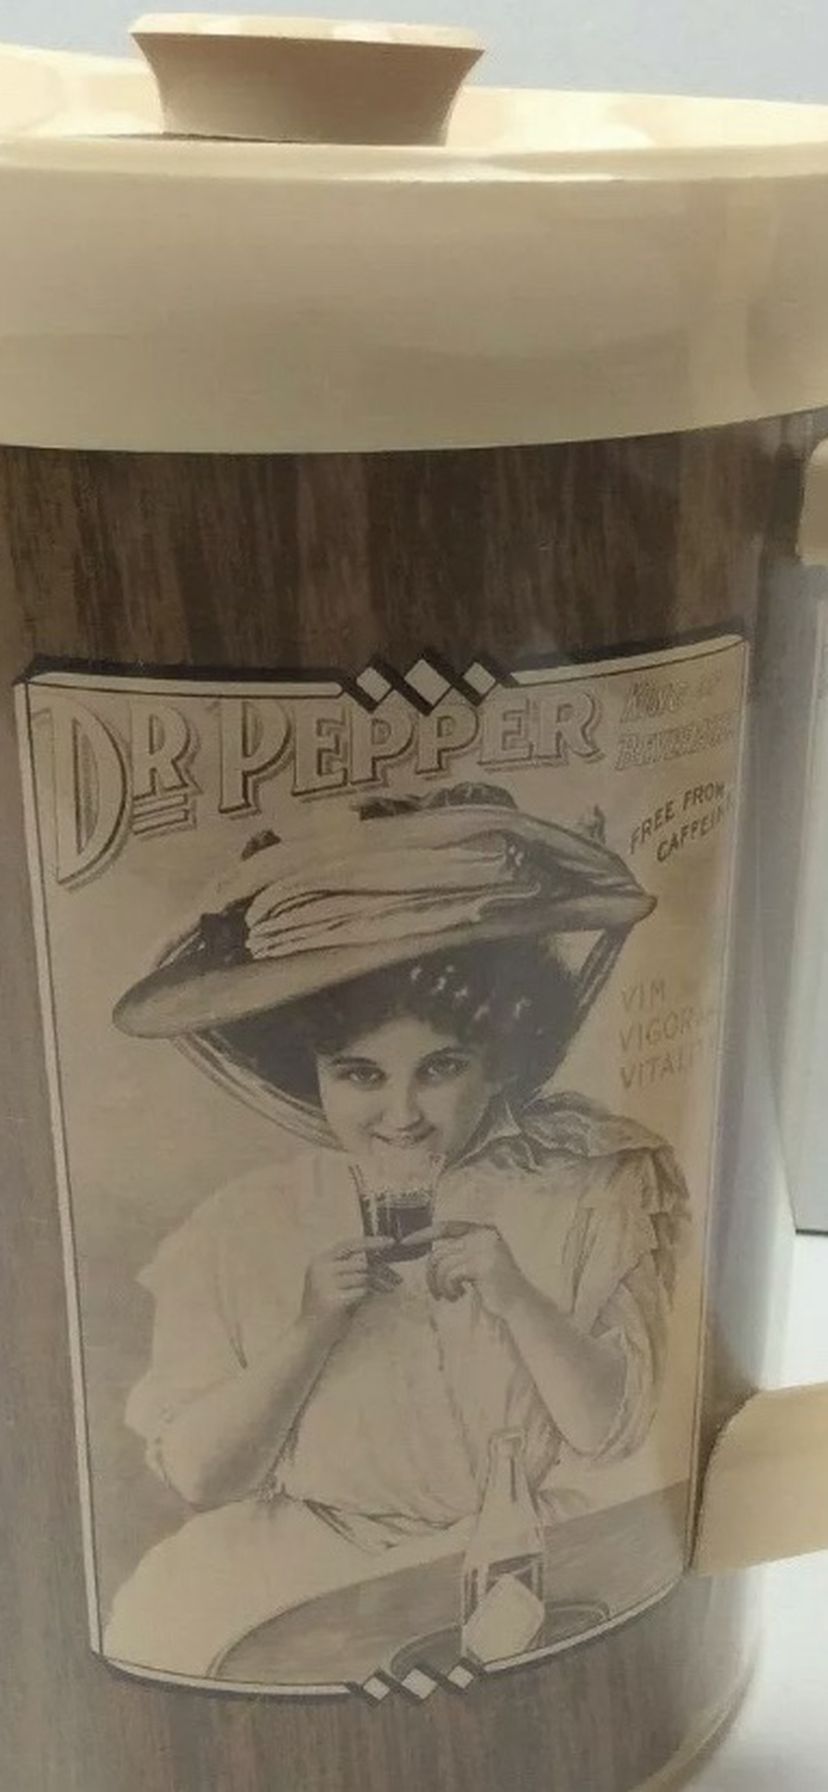 Dr Pepper Vintage Pitcher